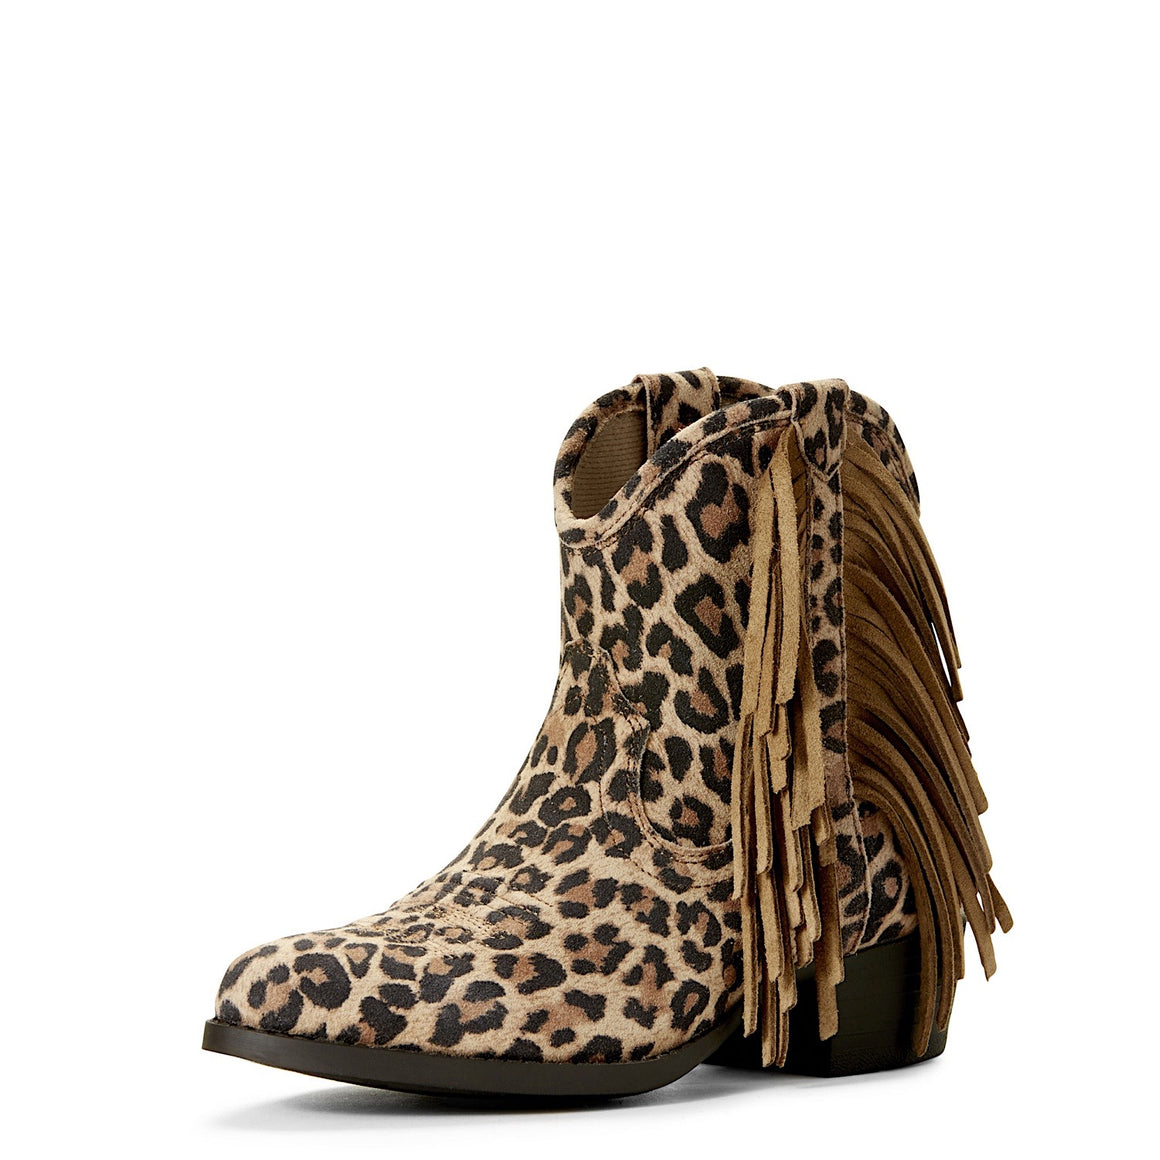 Ariat Girls Duchess Western Boot Leopard-10.0 Child